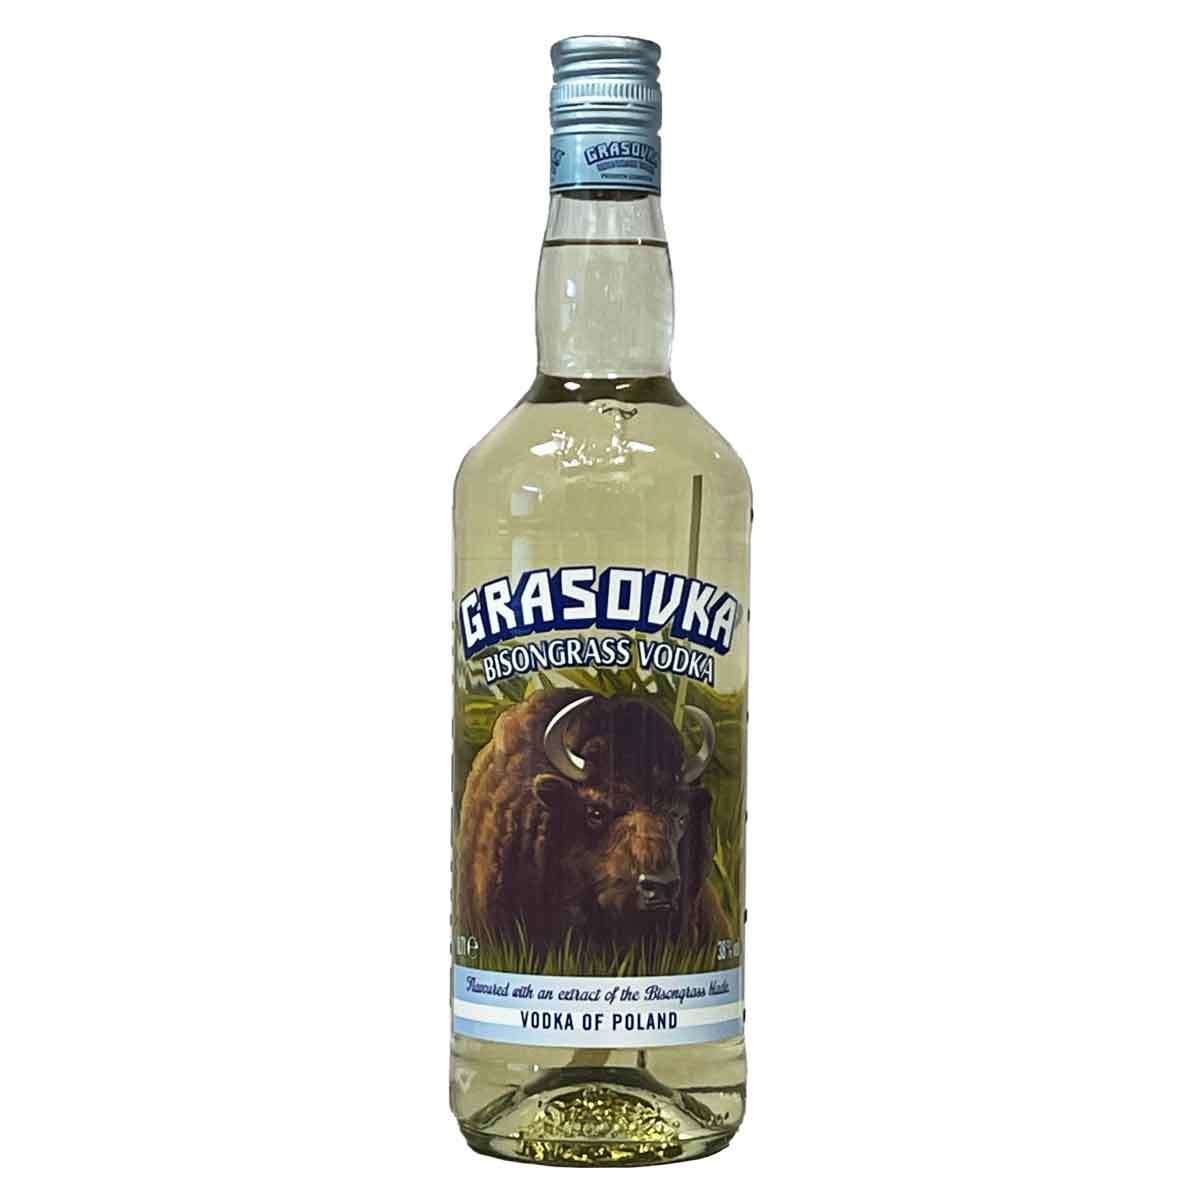 38% Bisongrass (0,7l) | Viel-Durst Vodka Grasovka